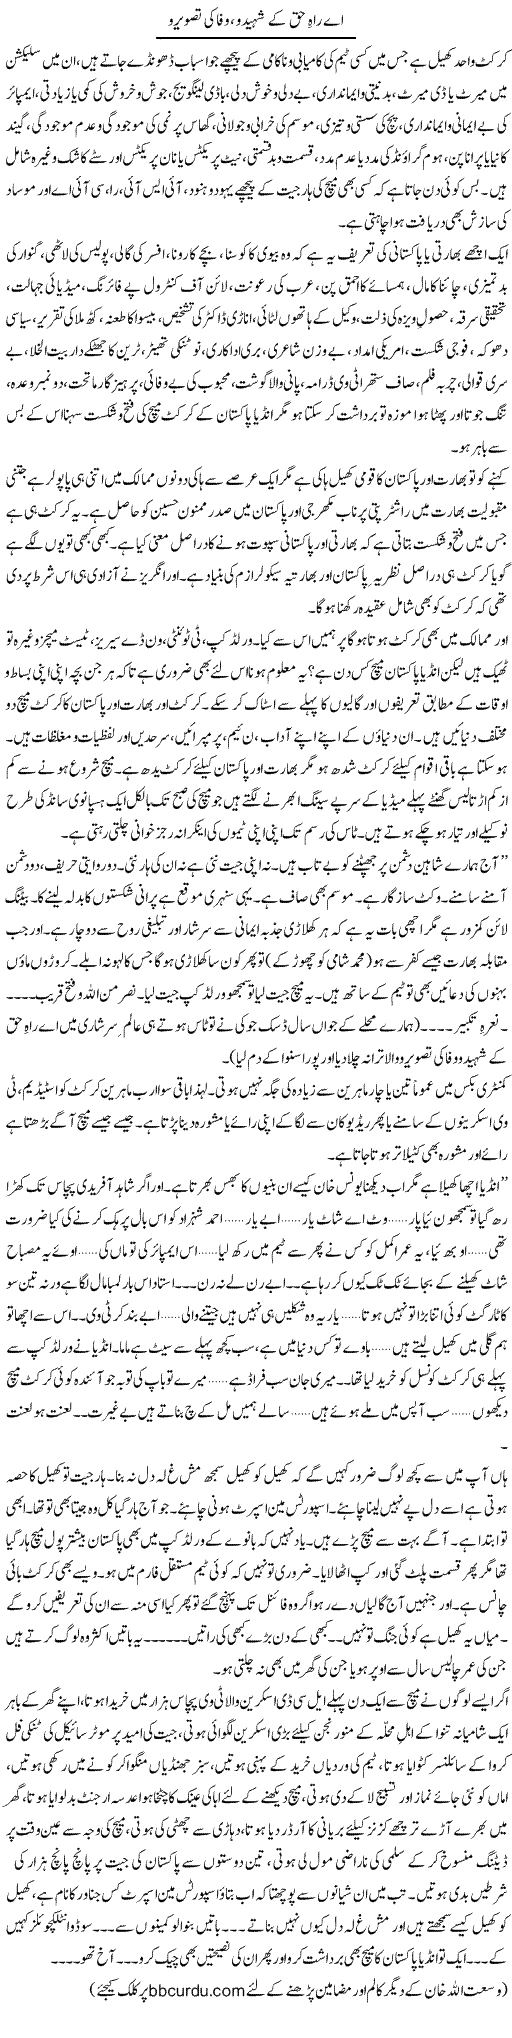 Ae Rah e Haq Ke Shaheedo, Wafa Ki Tasviro | Wusat Ullah Khan | Daily Urdu Columns